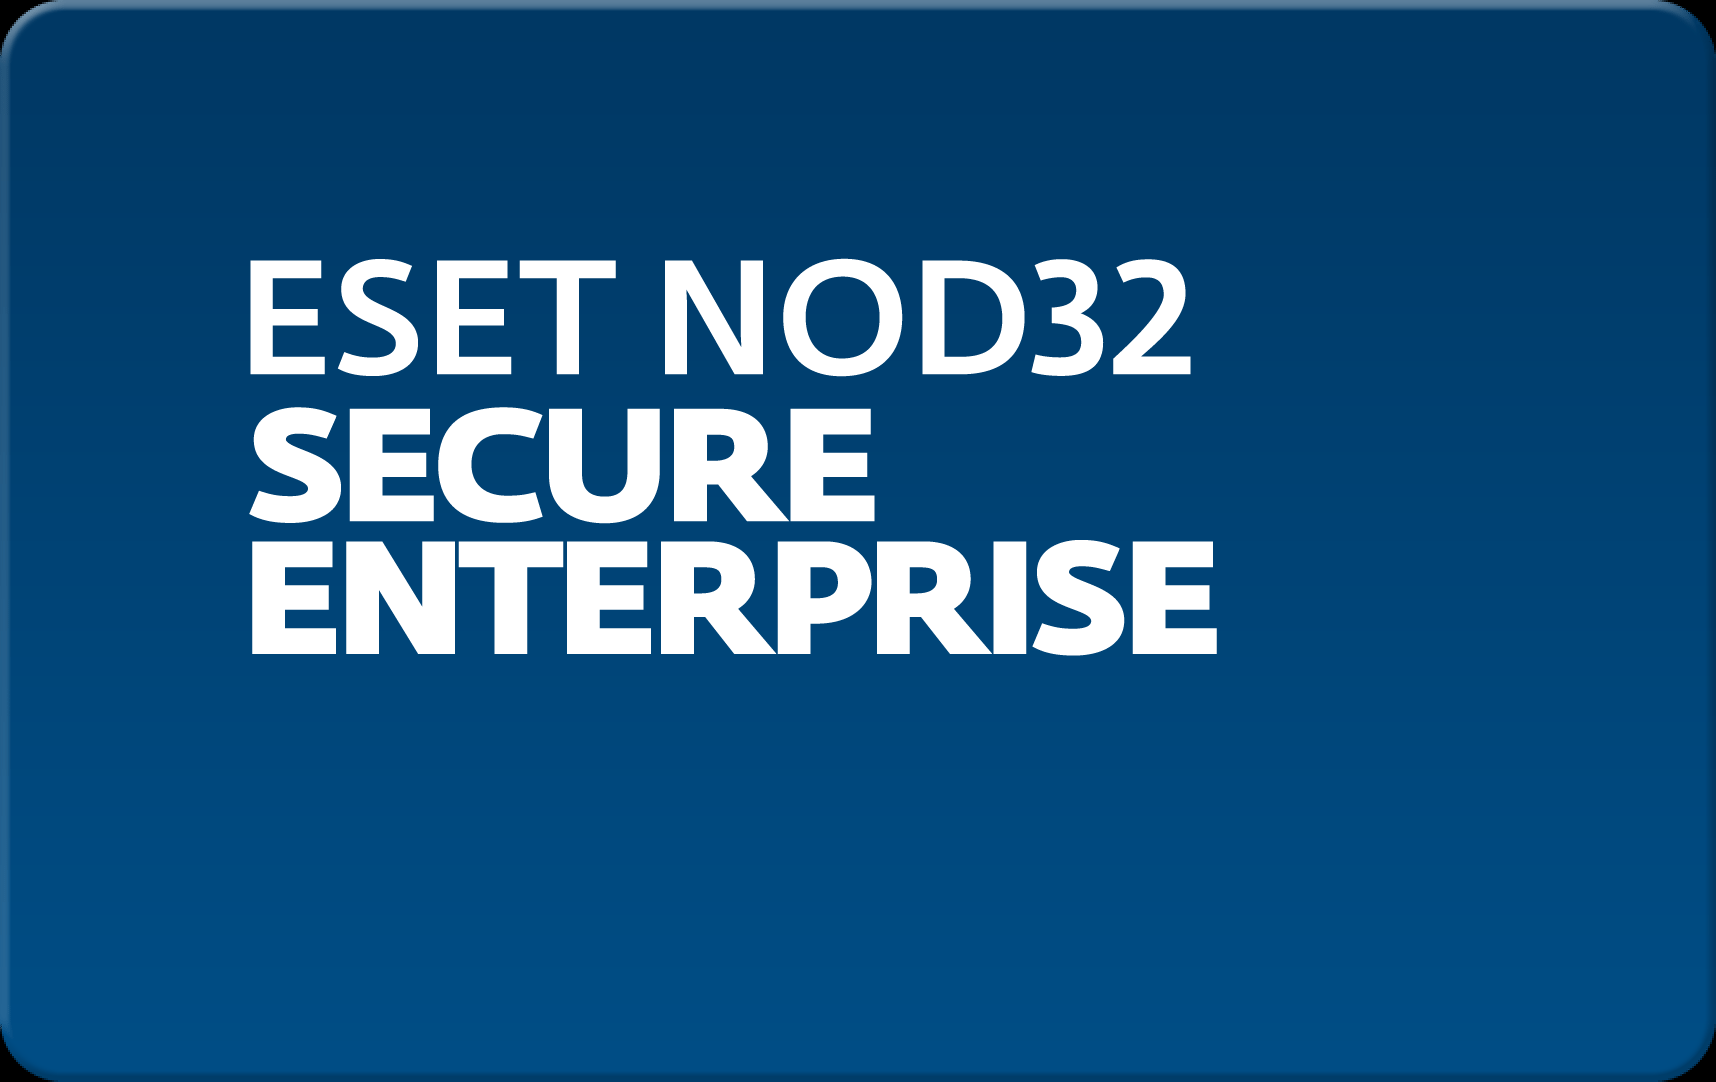        Eset NOD32 Secure Enterprise  156 